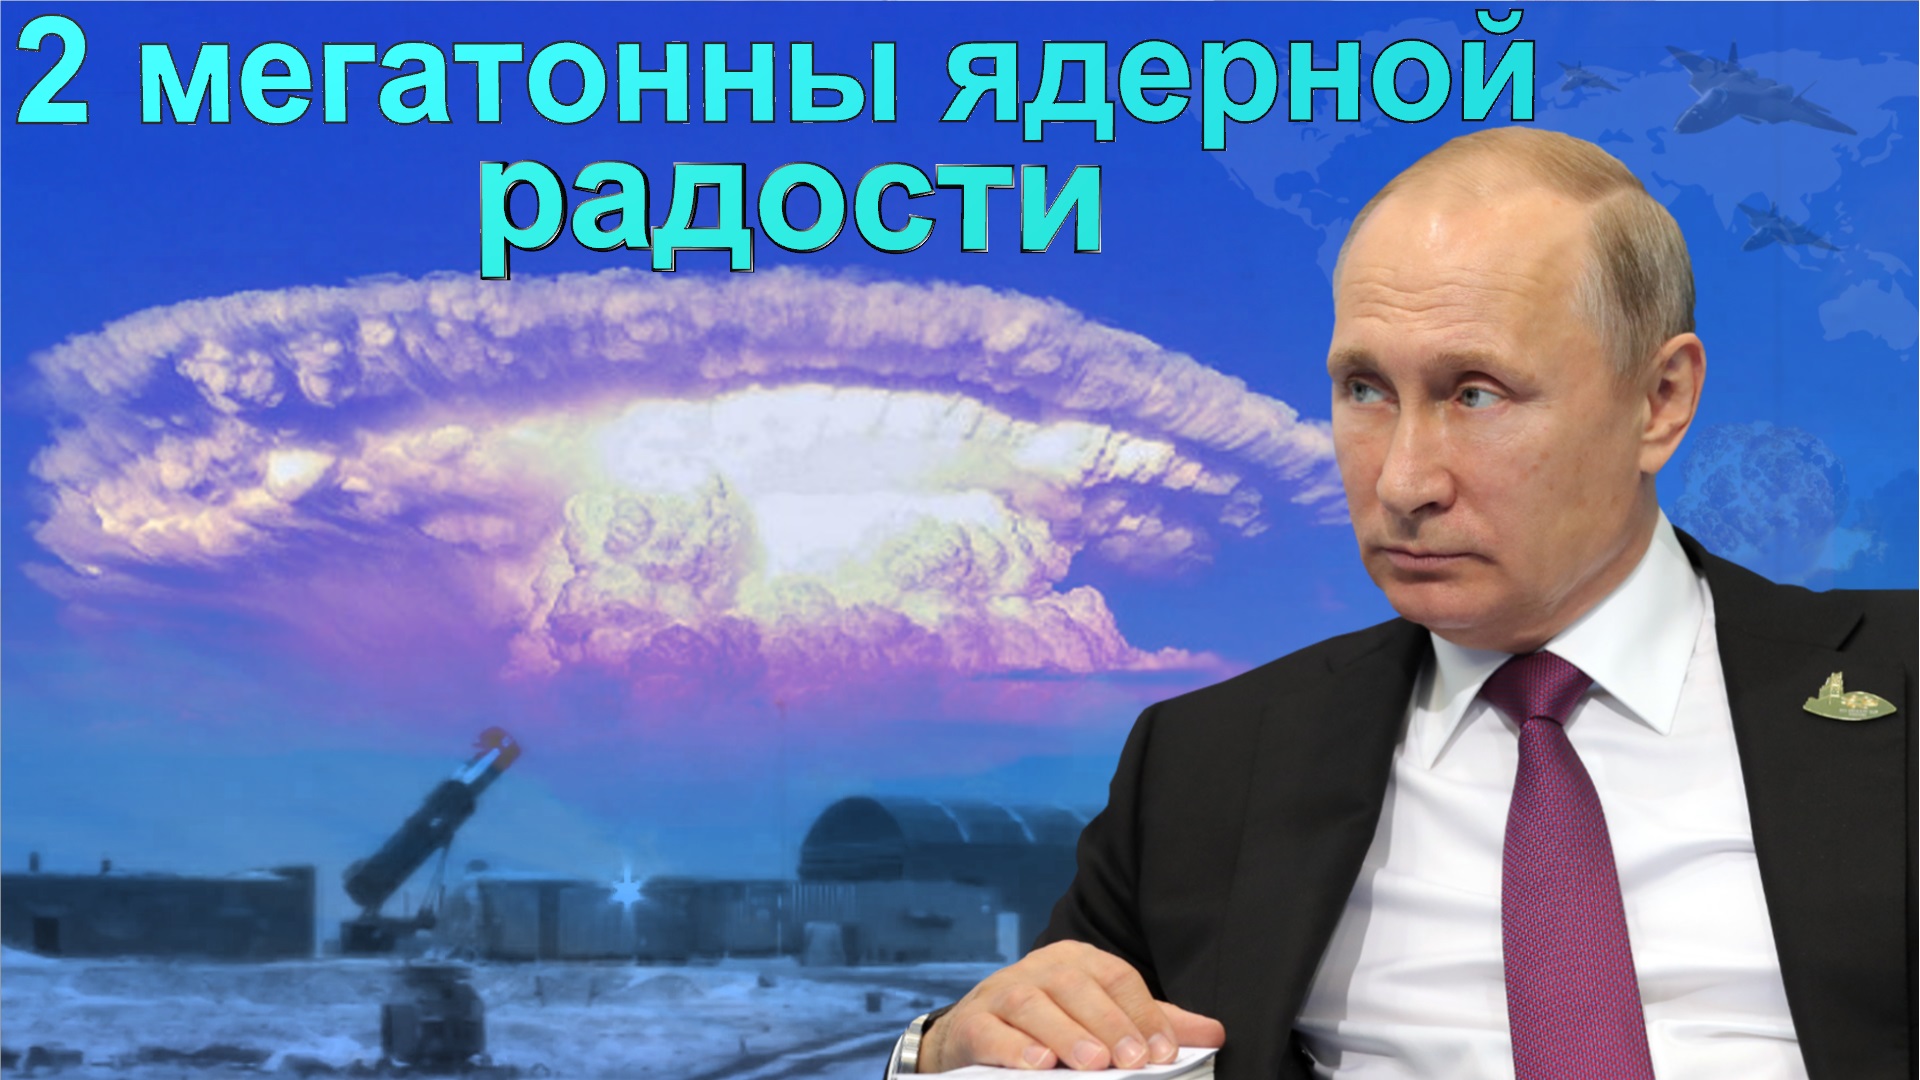 За монстром в железе скрылась таинственная "Путинская ракета" с дальностью 50 тыс. км. Что известно?